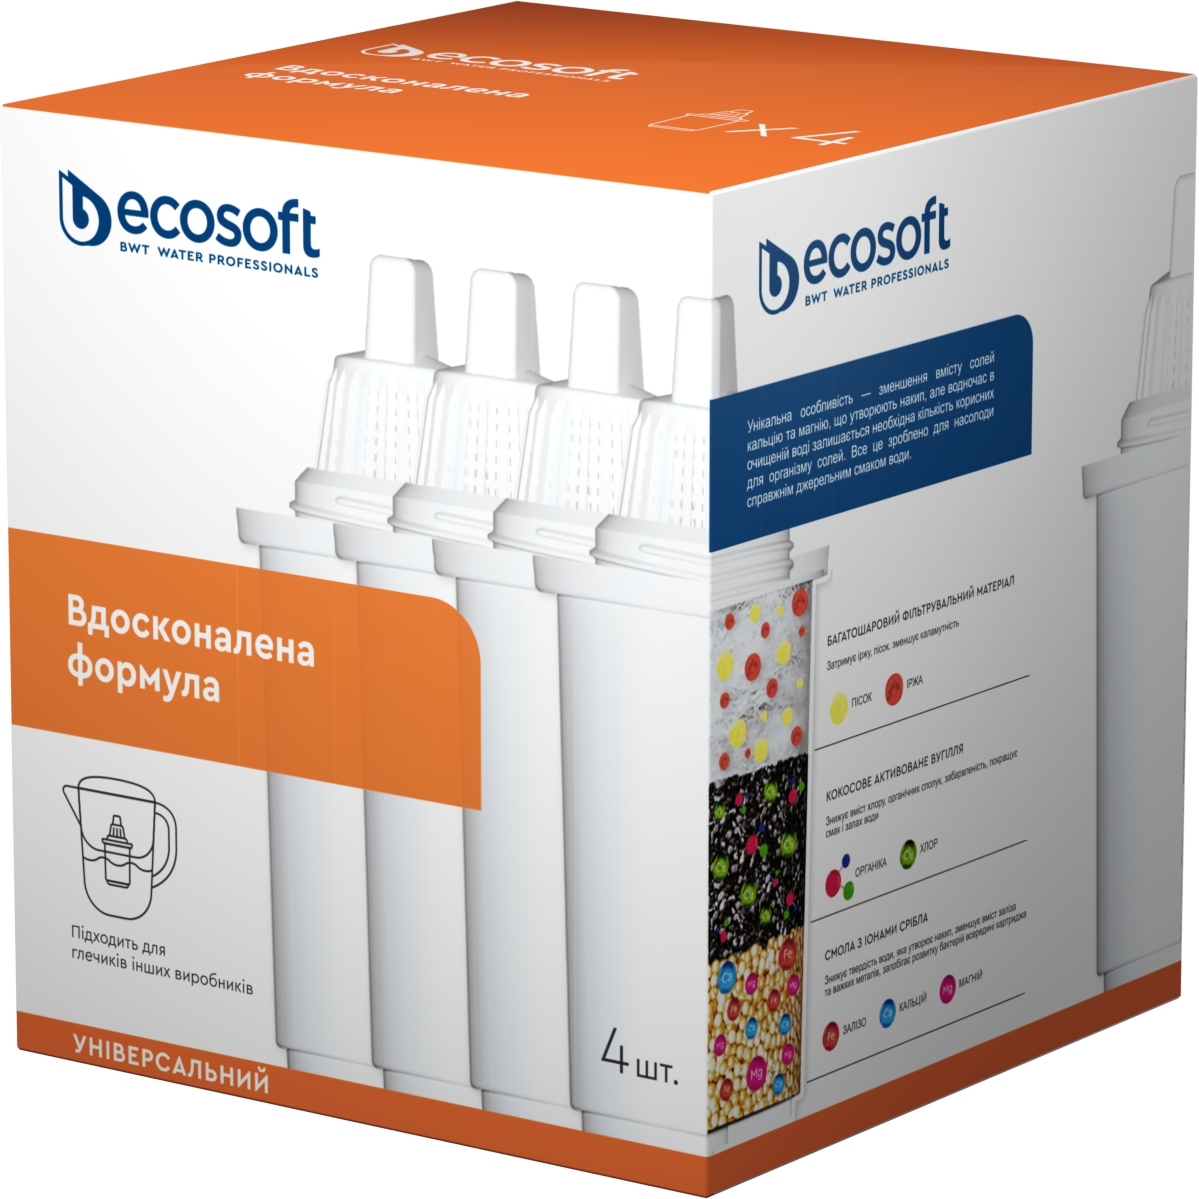 Купить картридж ecosoft для фильтра-кувшина Ecosoft CRVKABN4ECO (универсальный) 4шт. в Киеве